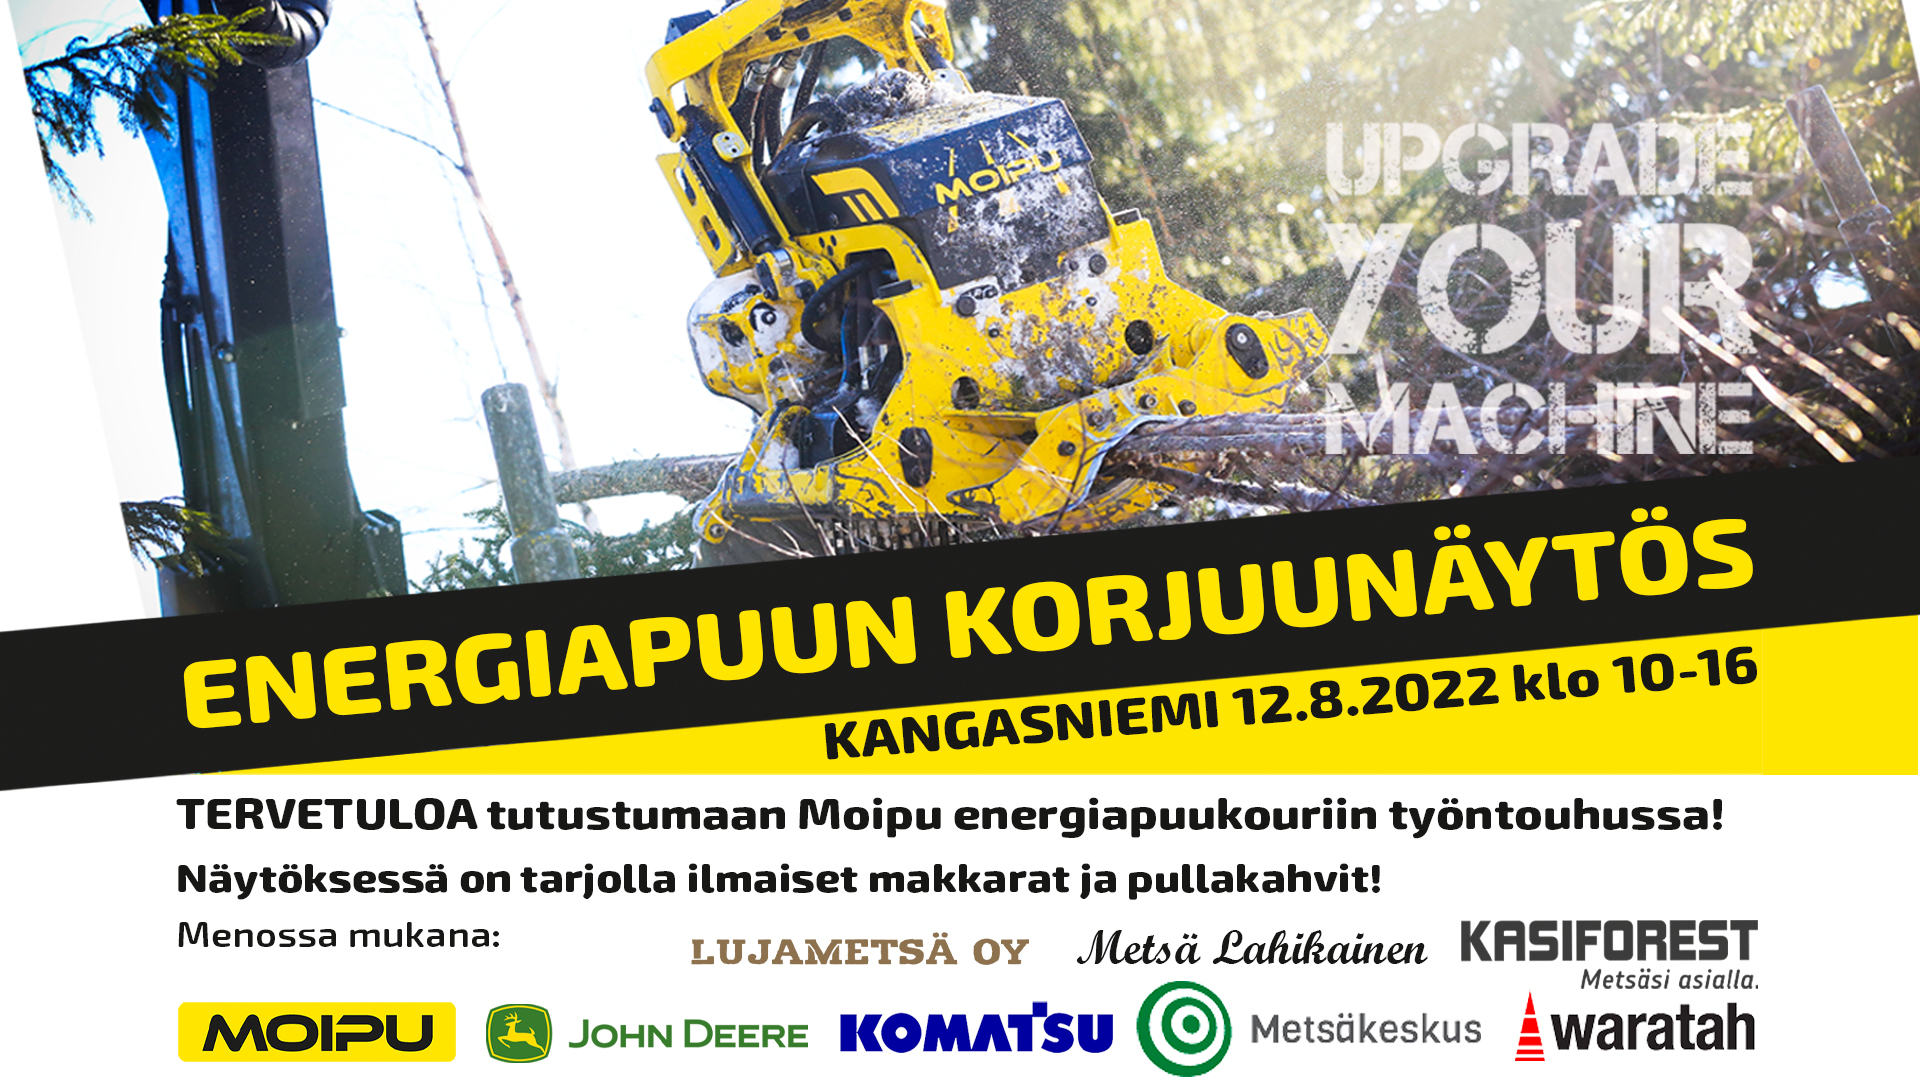 Energiapuun korjuunäytös Kangasniemellä 12.8.2022